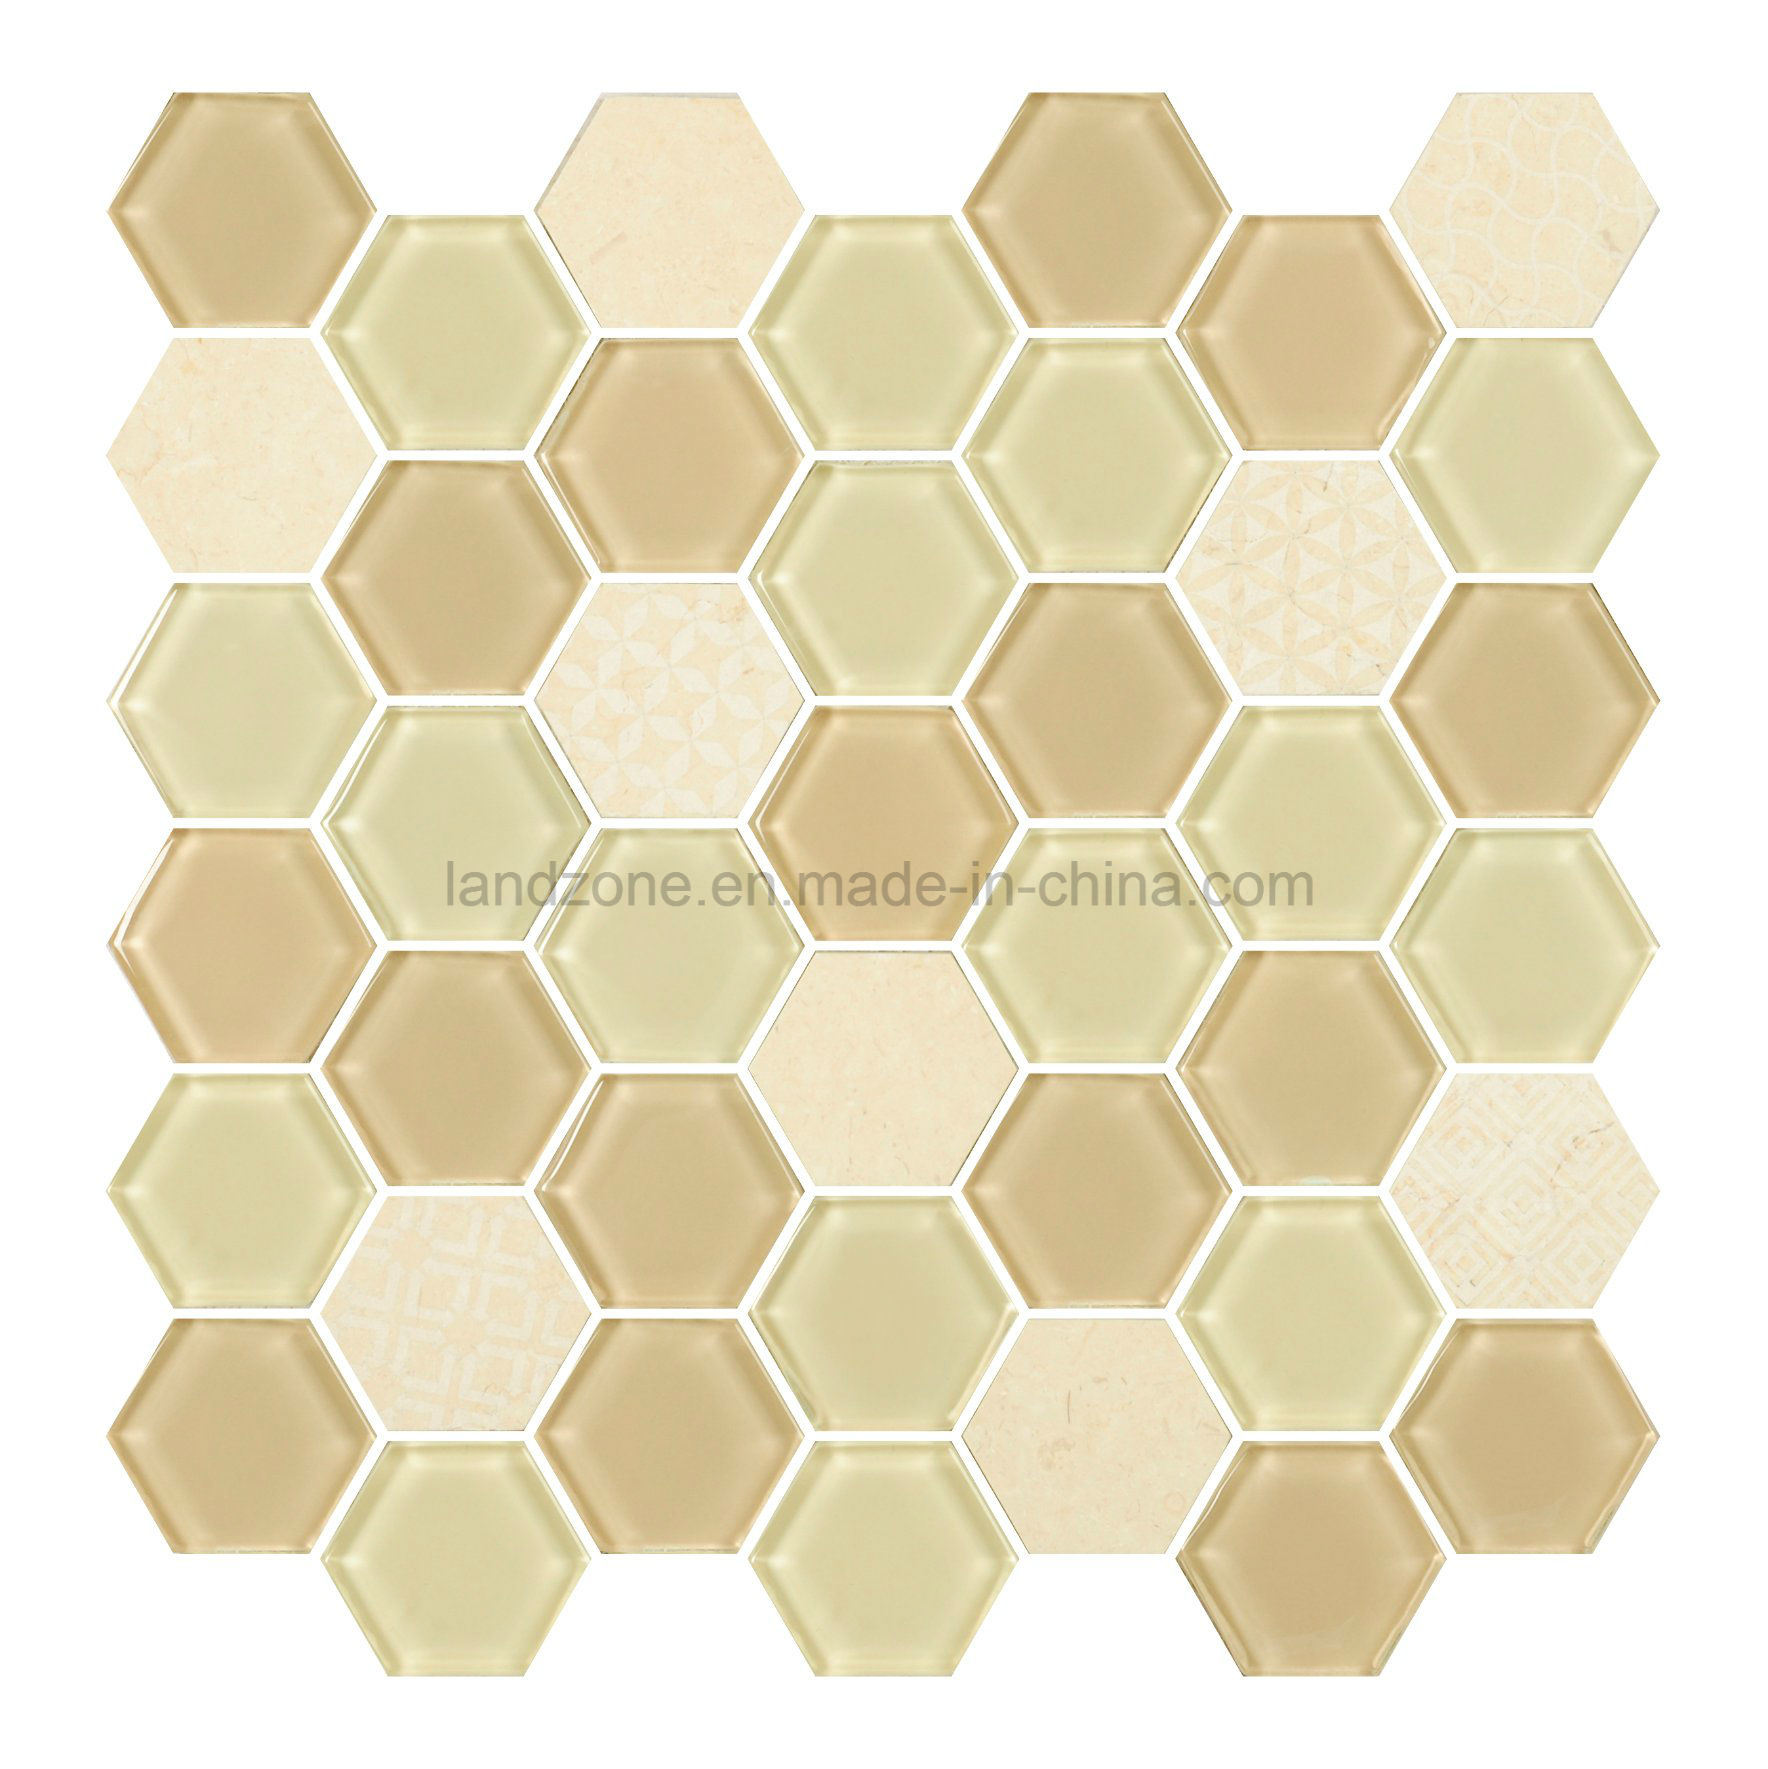  Azulejo de Mosaico Decorativo Interior de Mezcla Hexagonal de Vidrio Beige y Gris